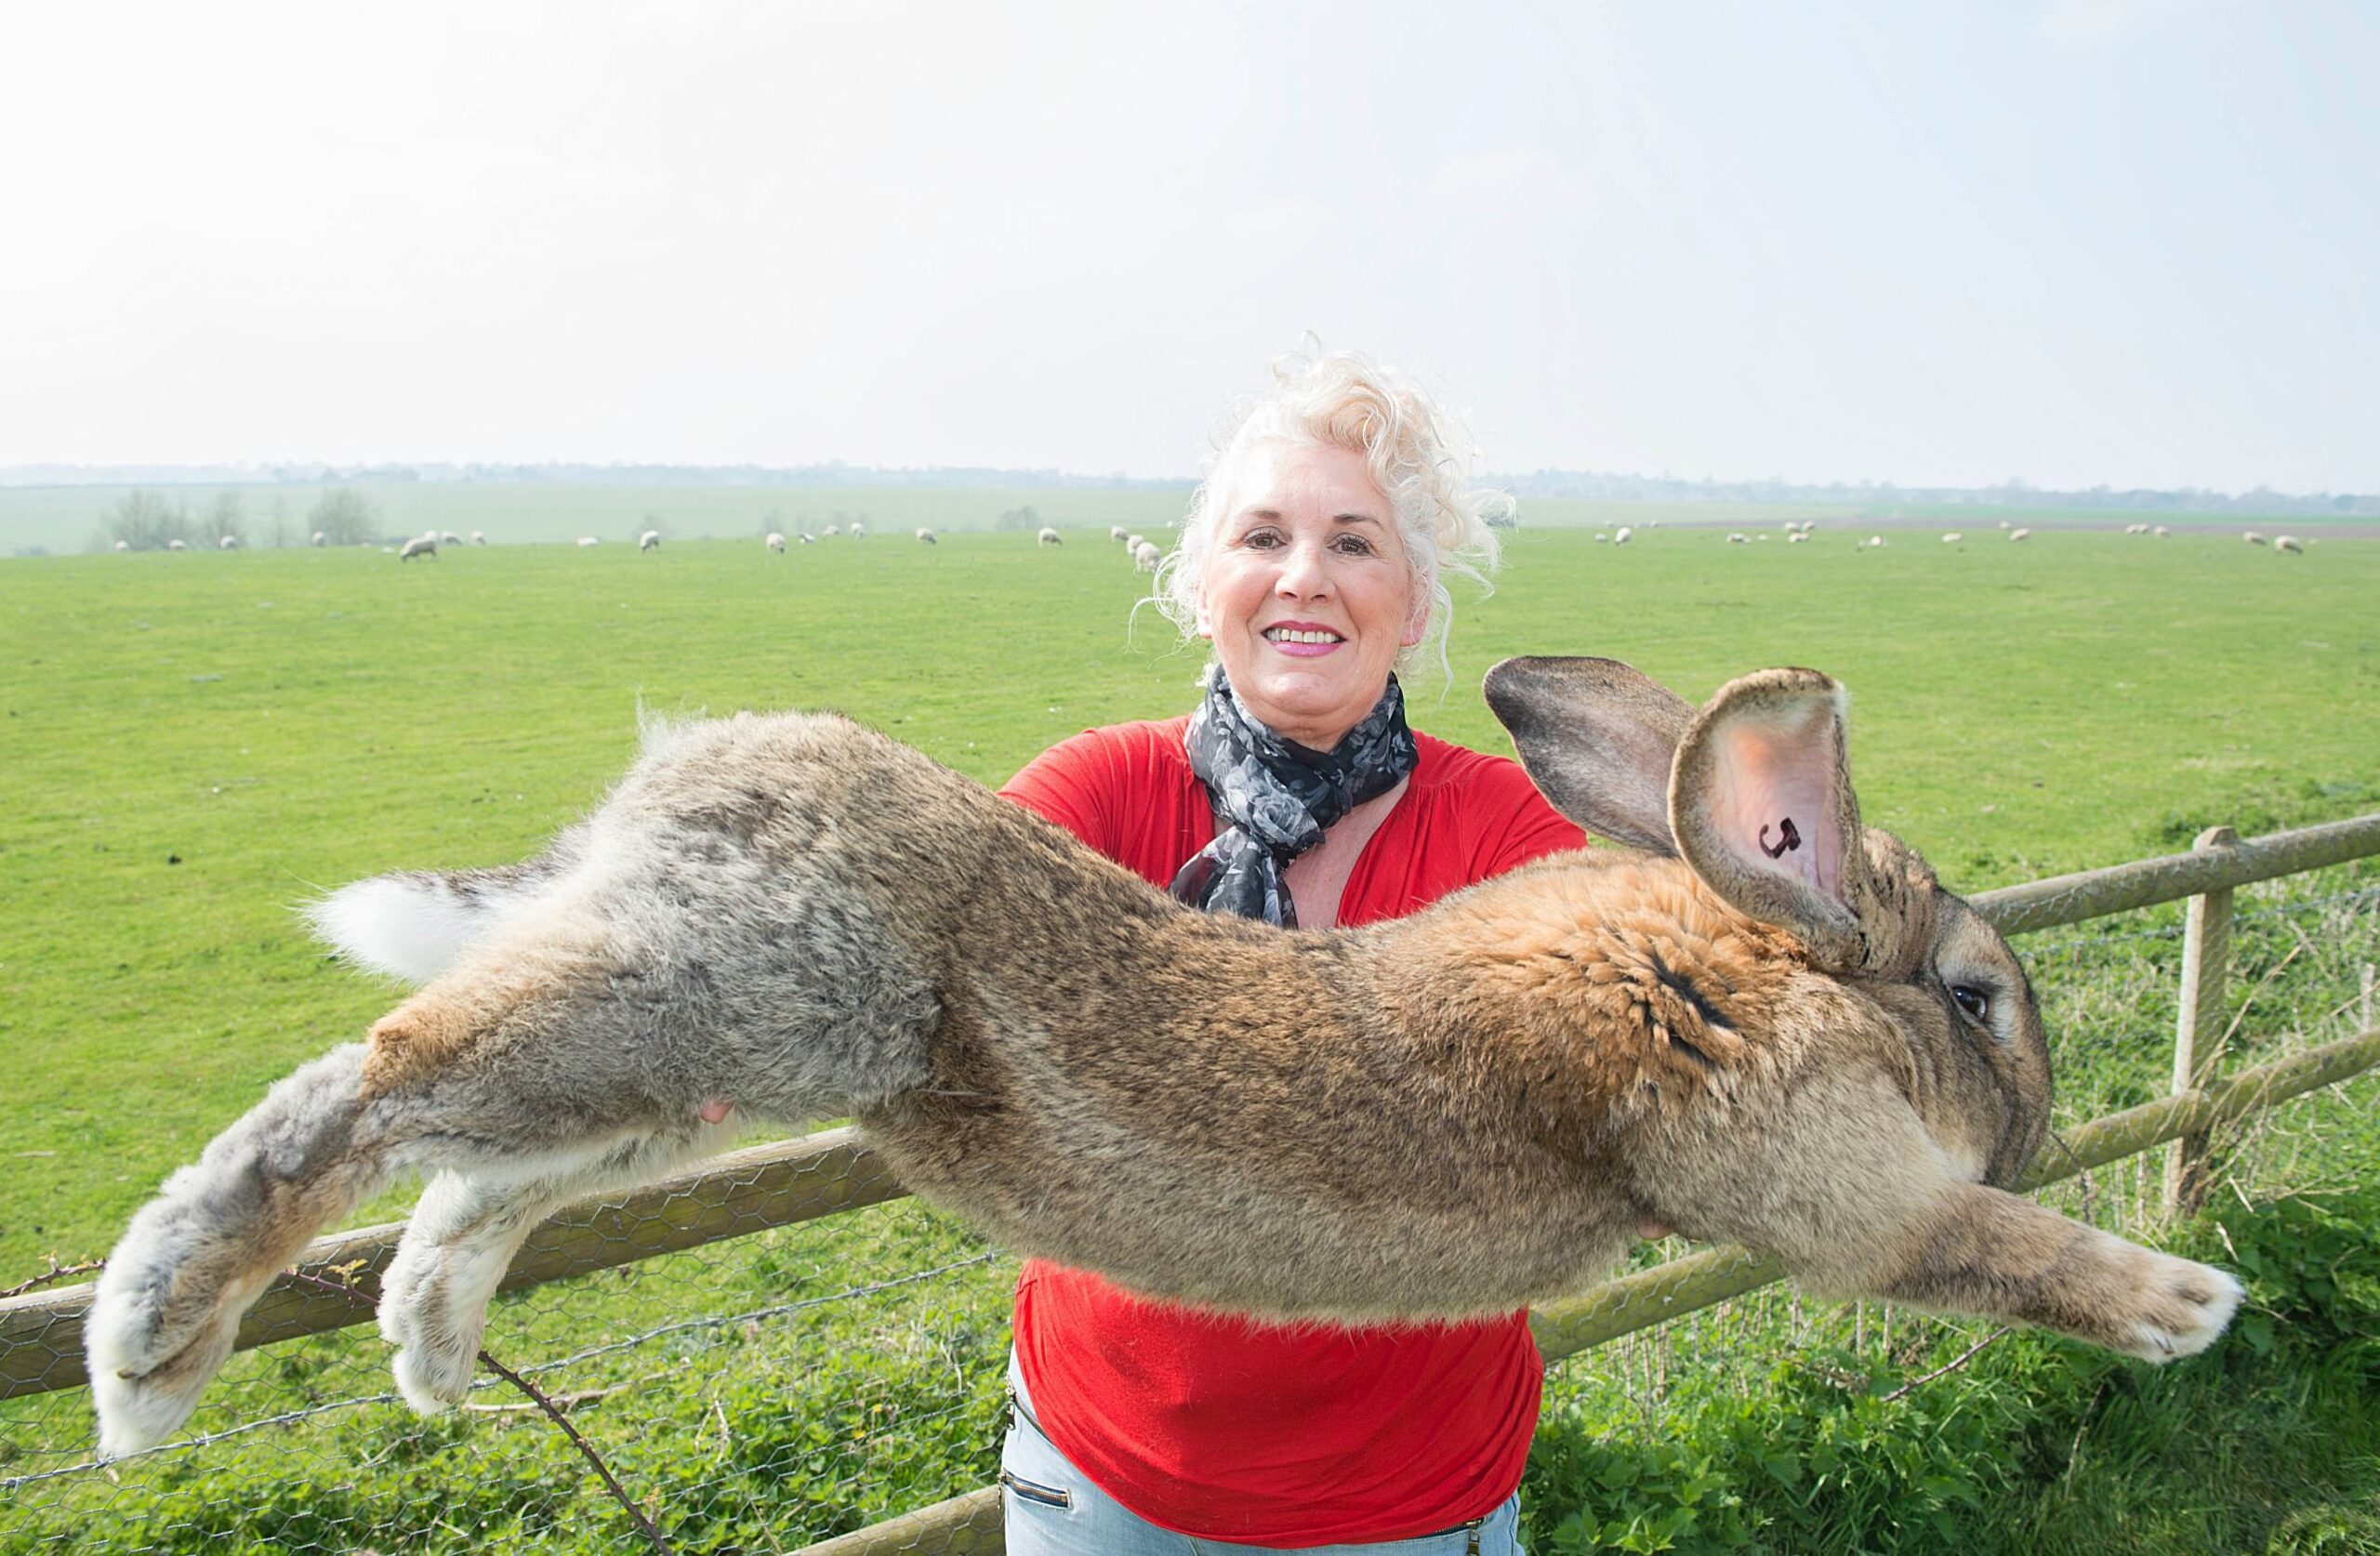 A Giant Rabbit Has Been Stolen in the UK!